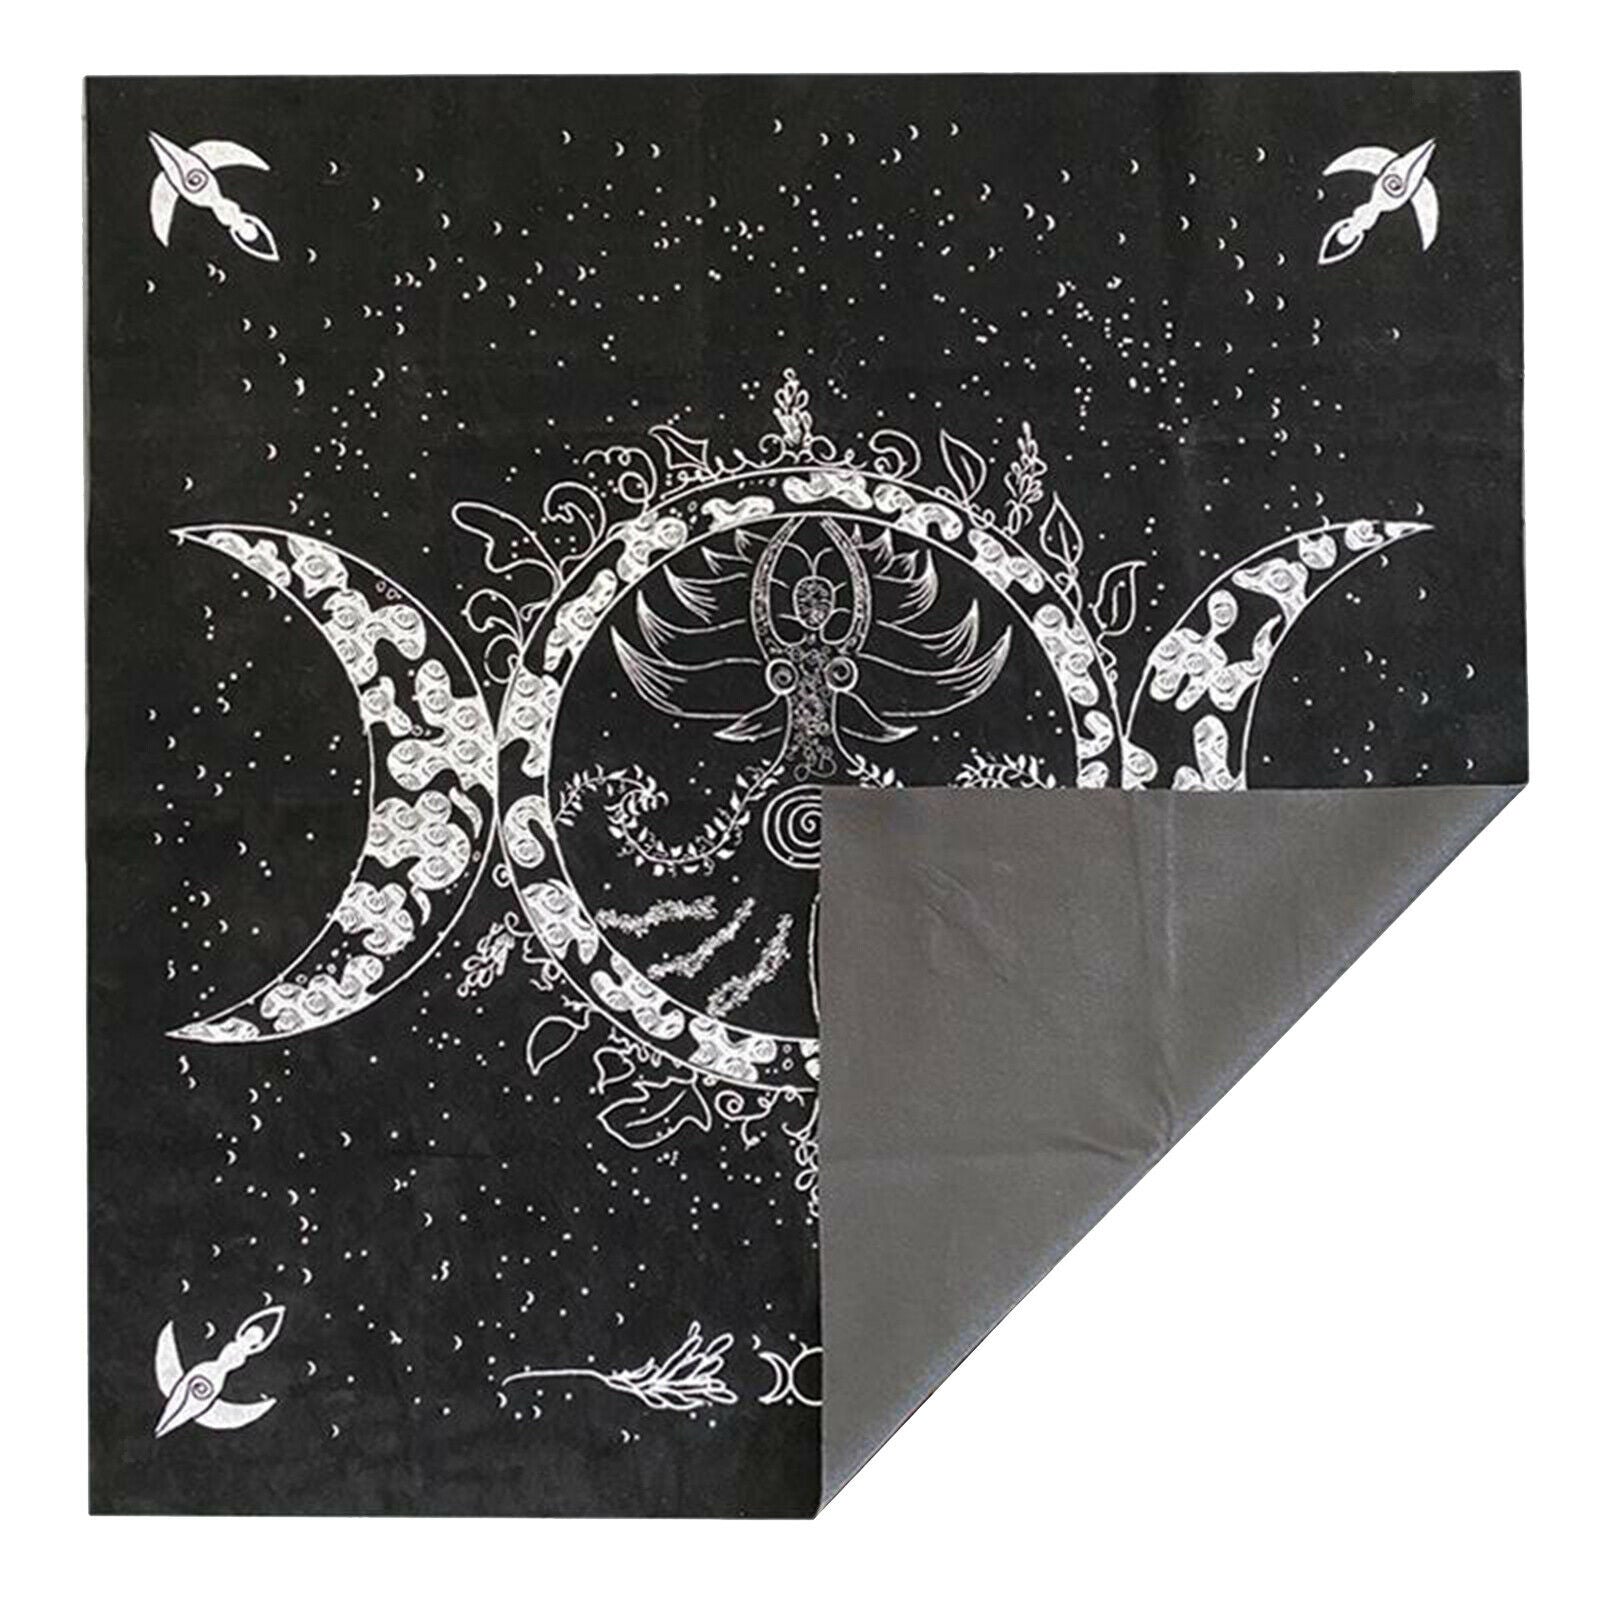 Altar Astrology Tarot Game Table Cloth Tarot Cards Tablecloth Velvet New